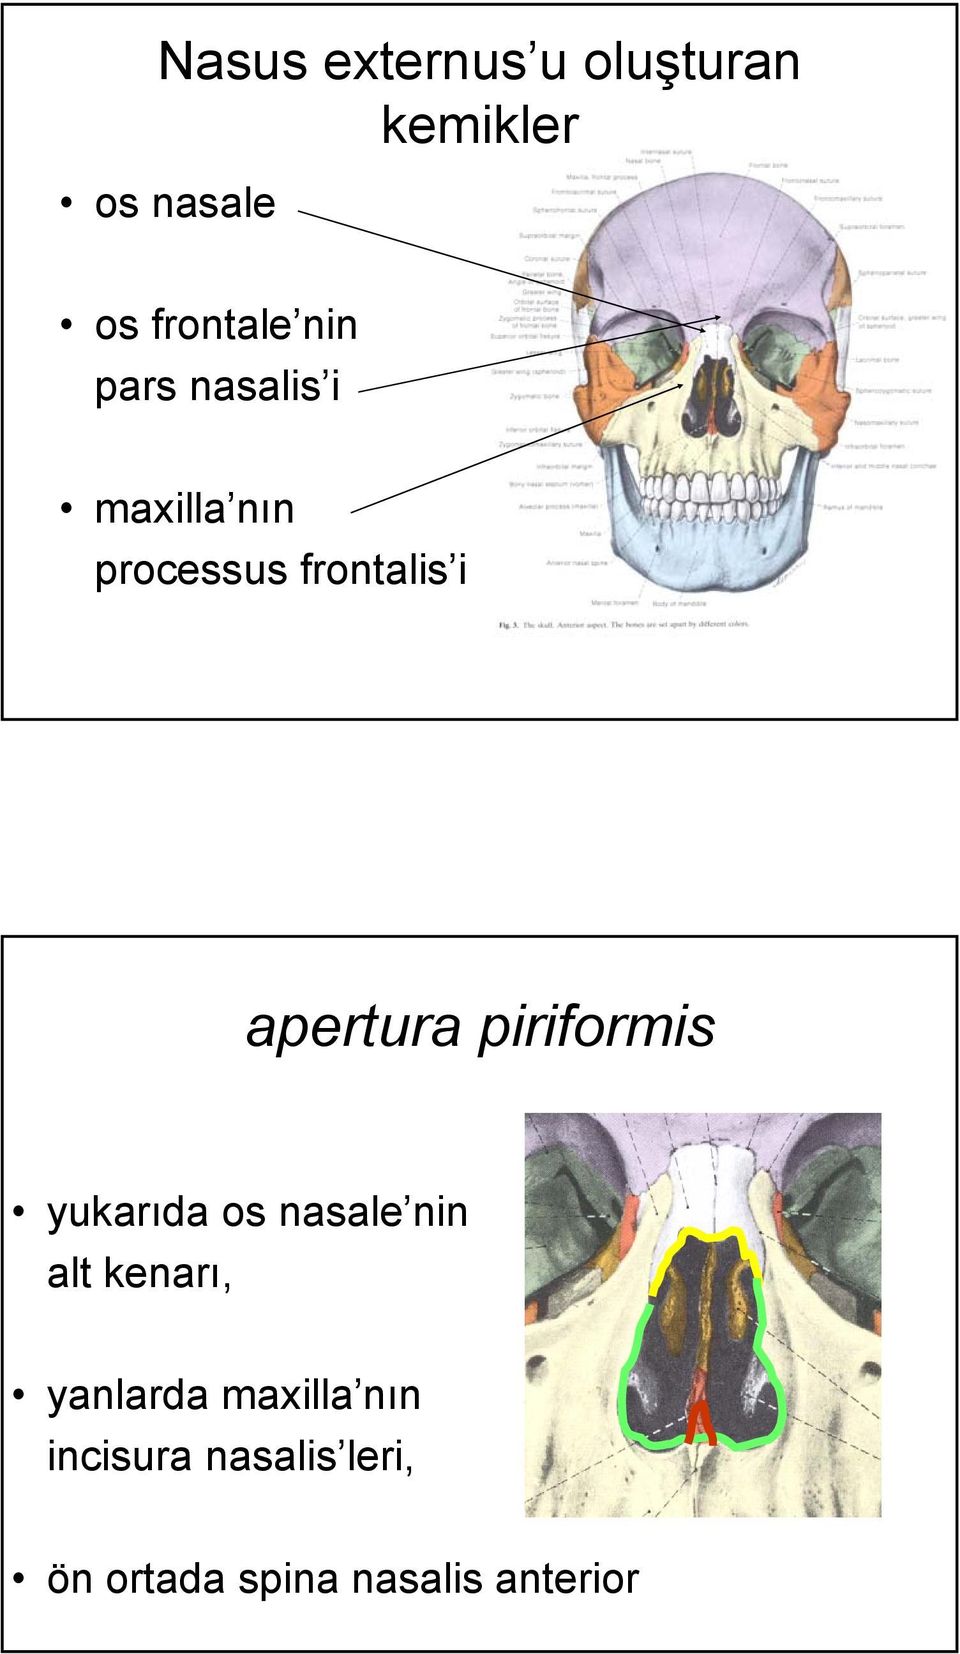 piriformis yukarıda os nasale nin alt kenarı, yanlarda